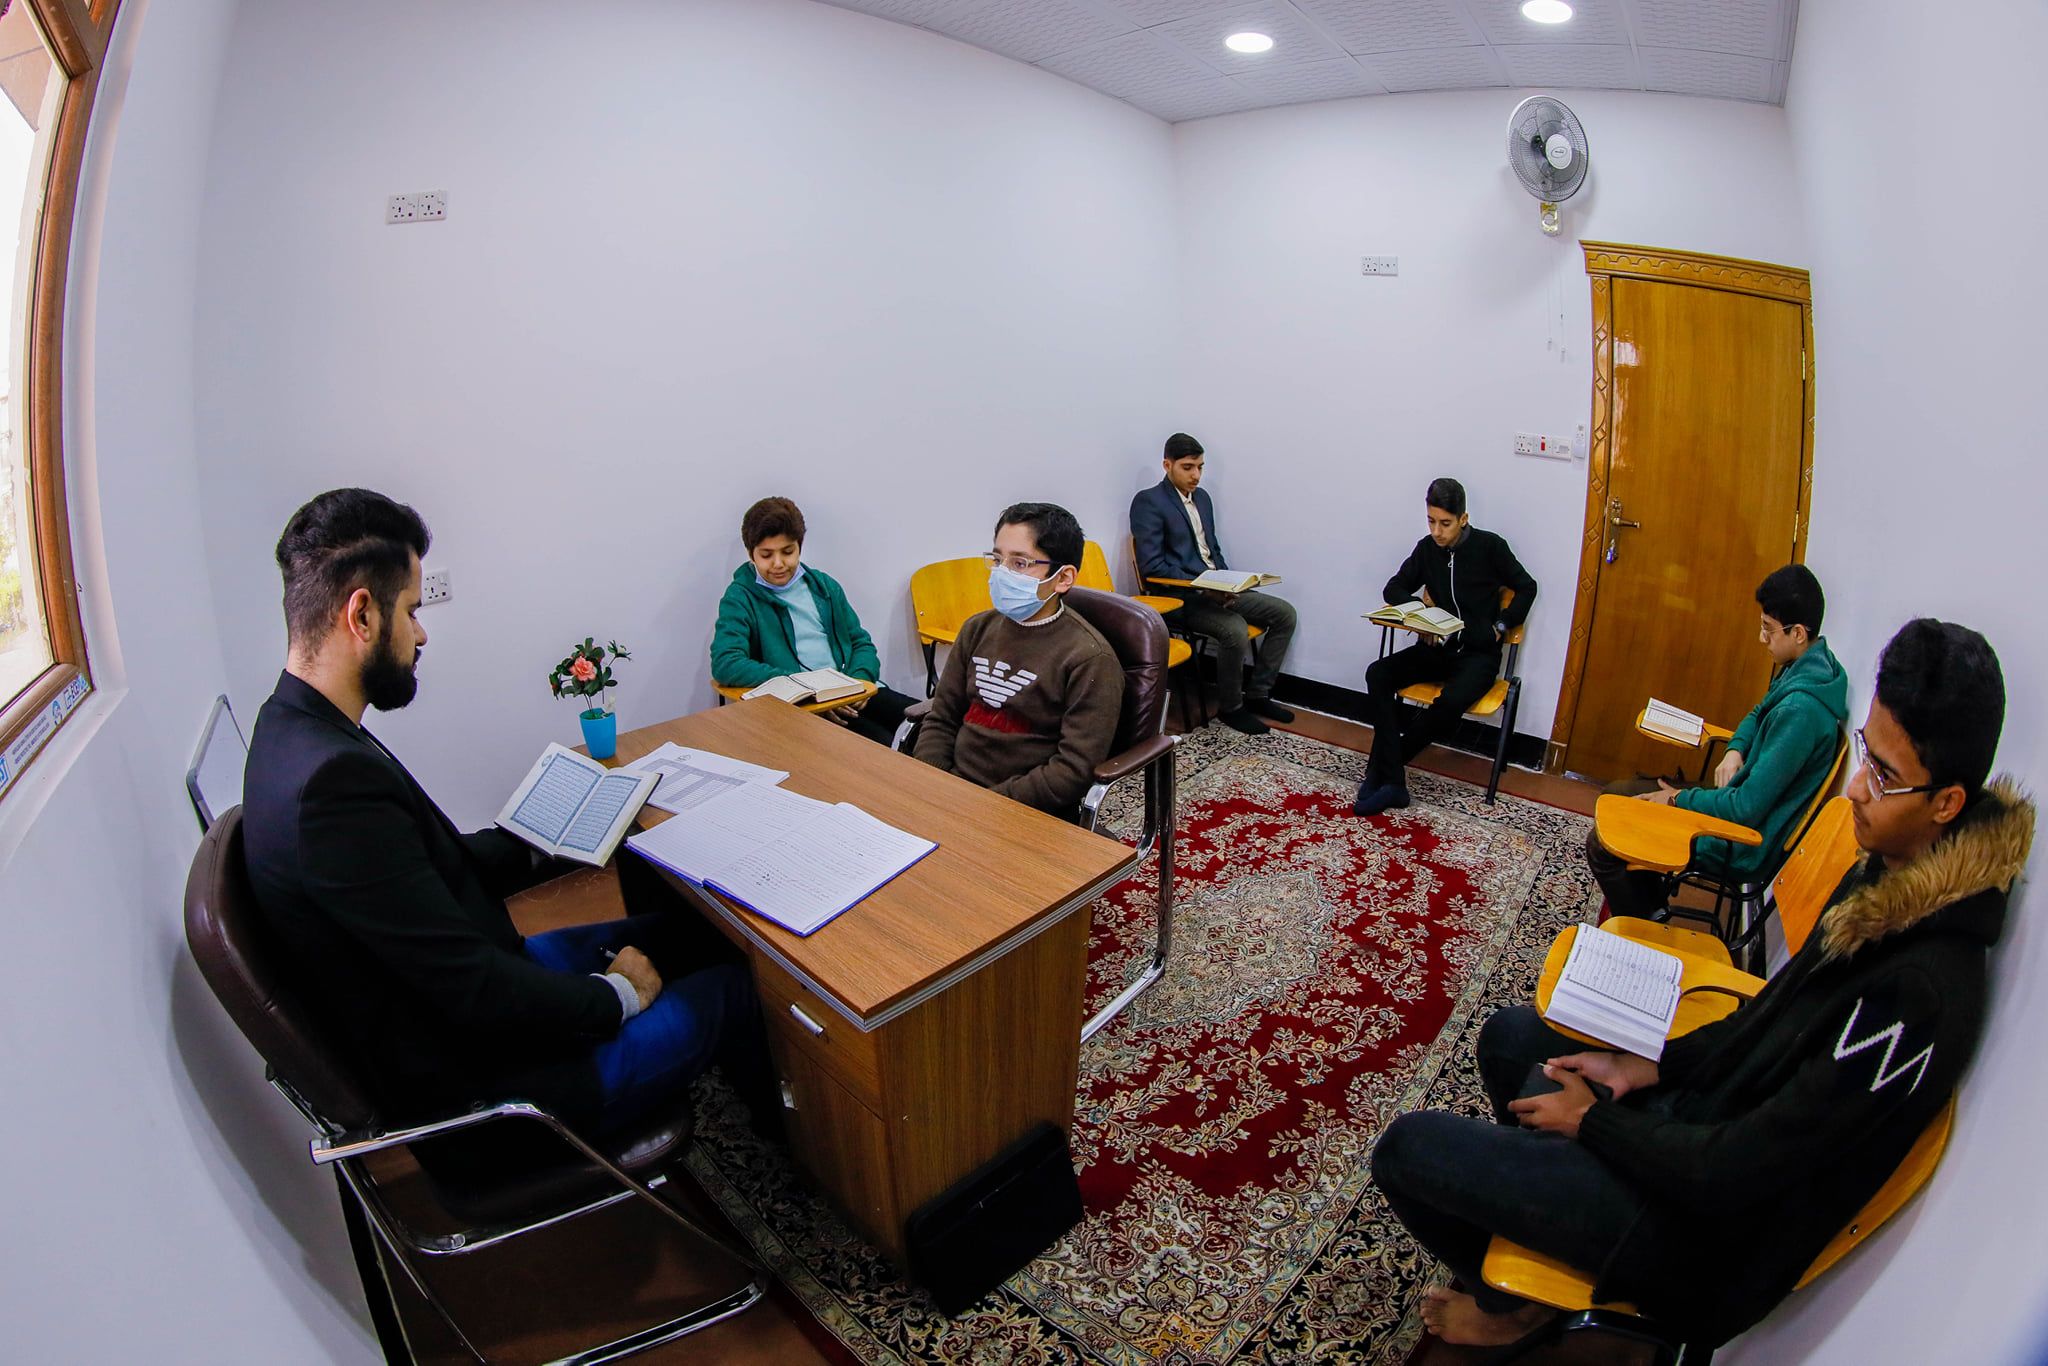 طلبة مشروع حفظ القرآن الكريم يواصلون دروسهم اليومية على وفق آلية تعليم متطورة